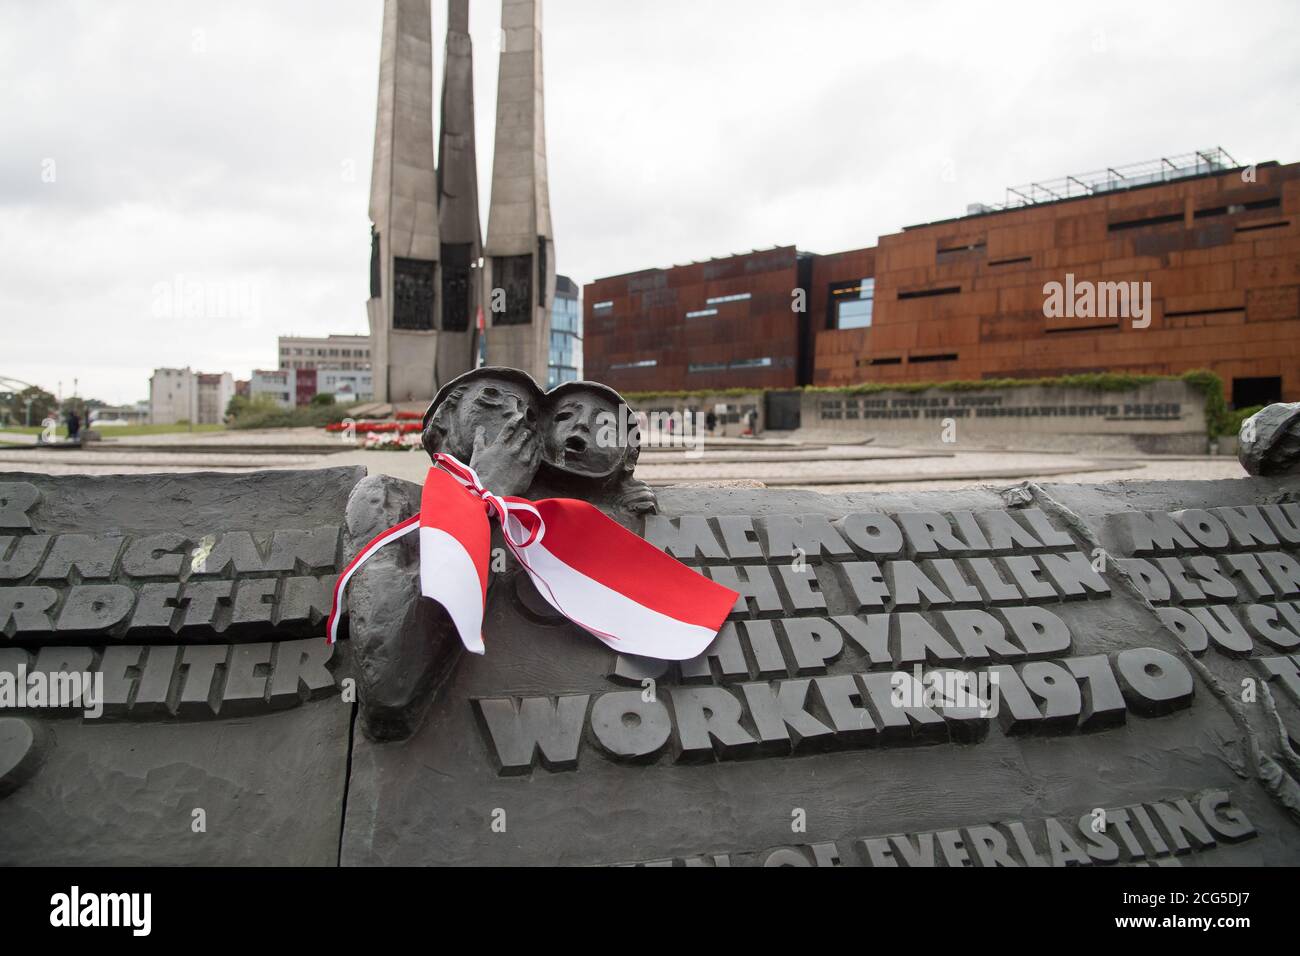 Pomnik Poleglych Stoczniowcow 1970 (Monument aux travailleurs de chantier naval disparus de 1970) sur Plac Solidarnosci (place de solidarité) à Gdansk, Pologne. Sept Banque D'Images